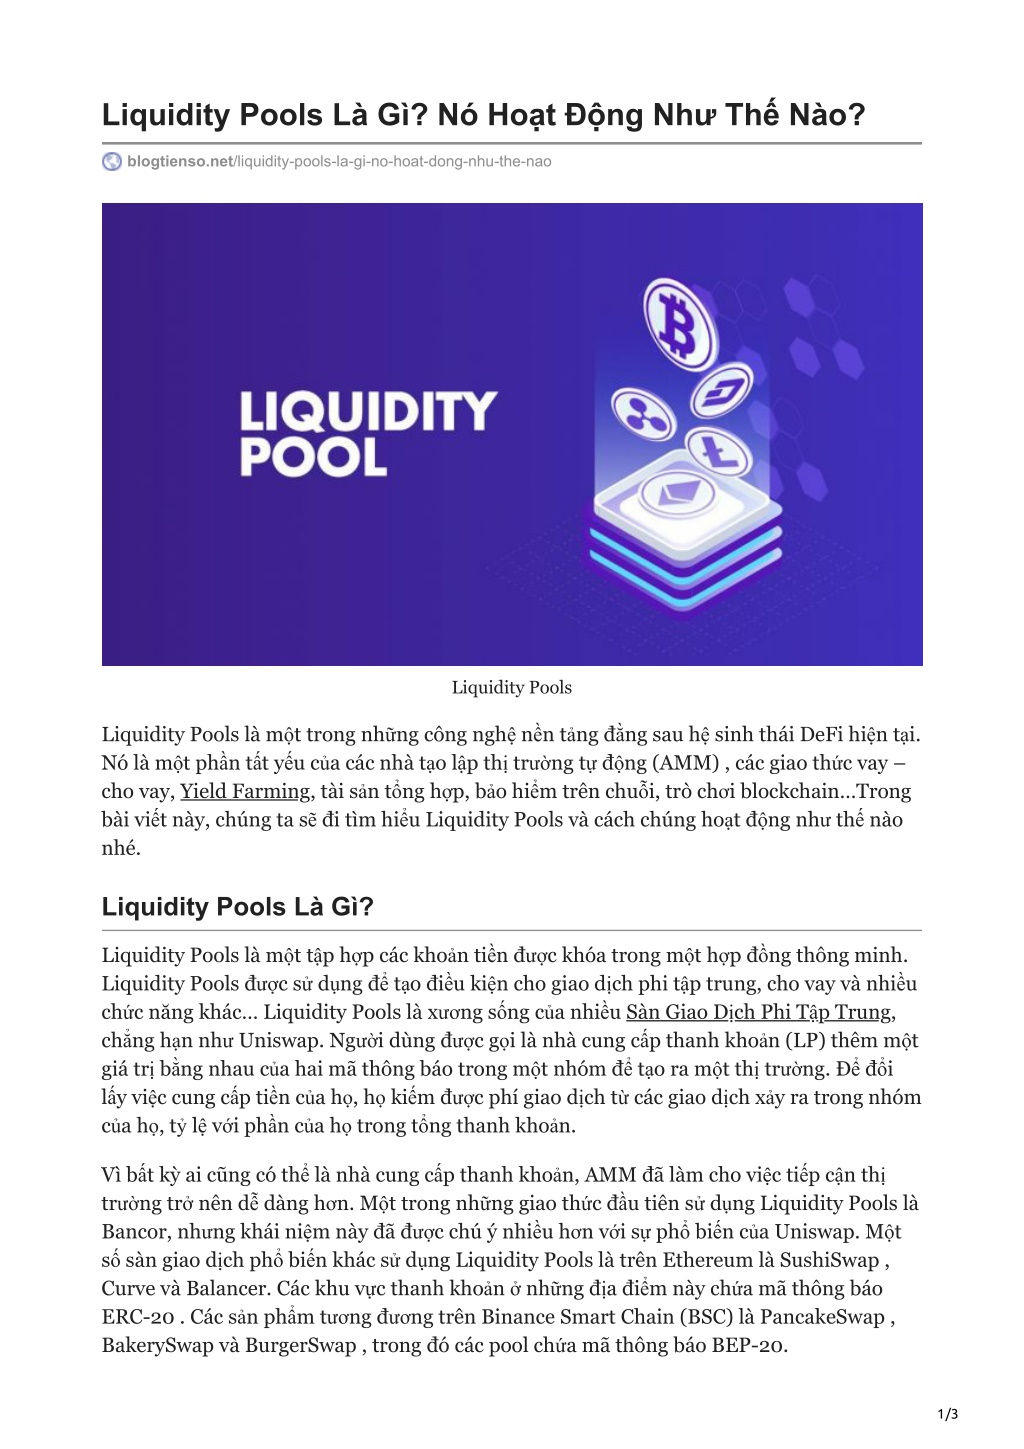 PPT - Liquidity Pools Là Gì? Nó Hot Động Như Thế Nào ...